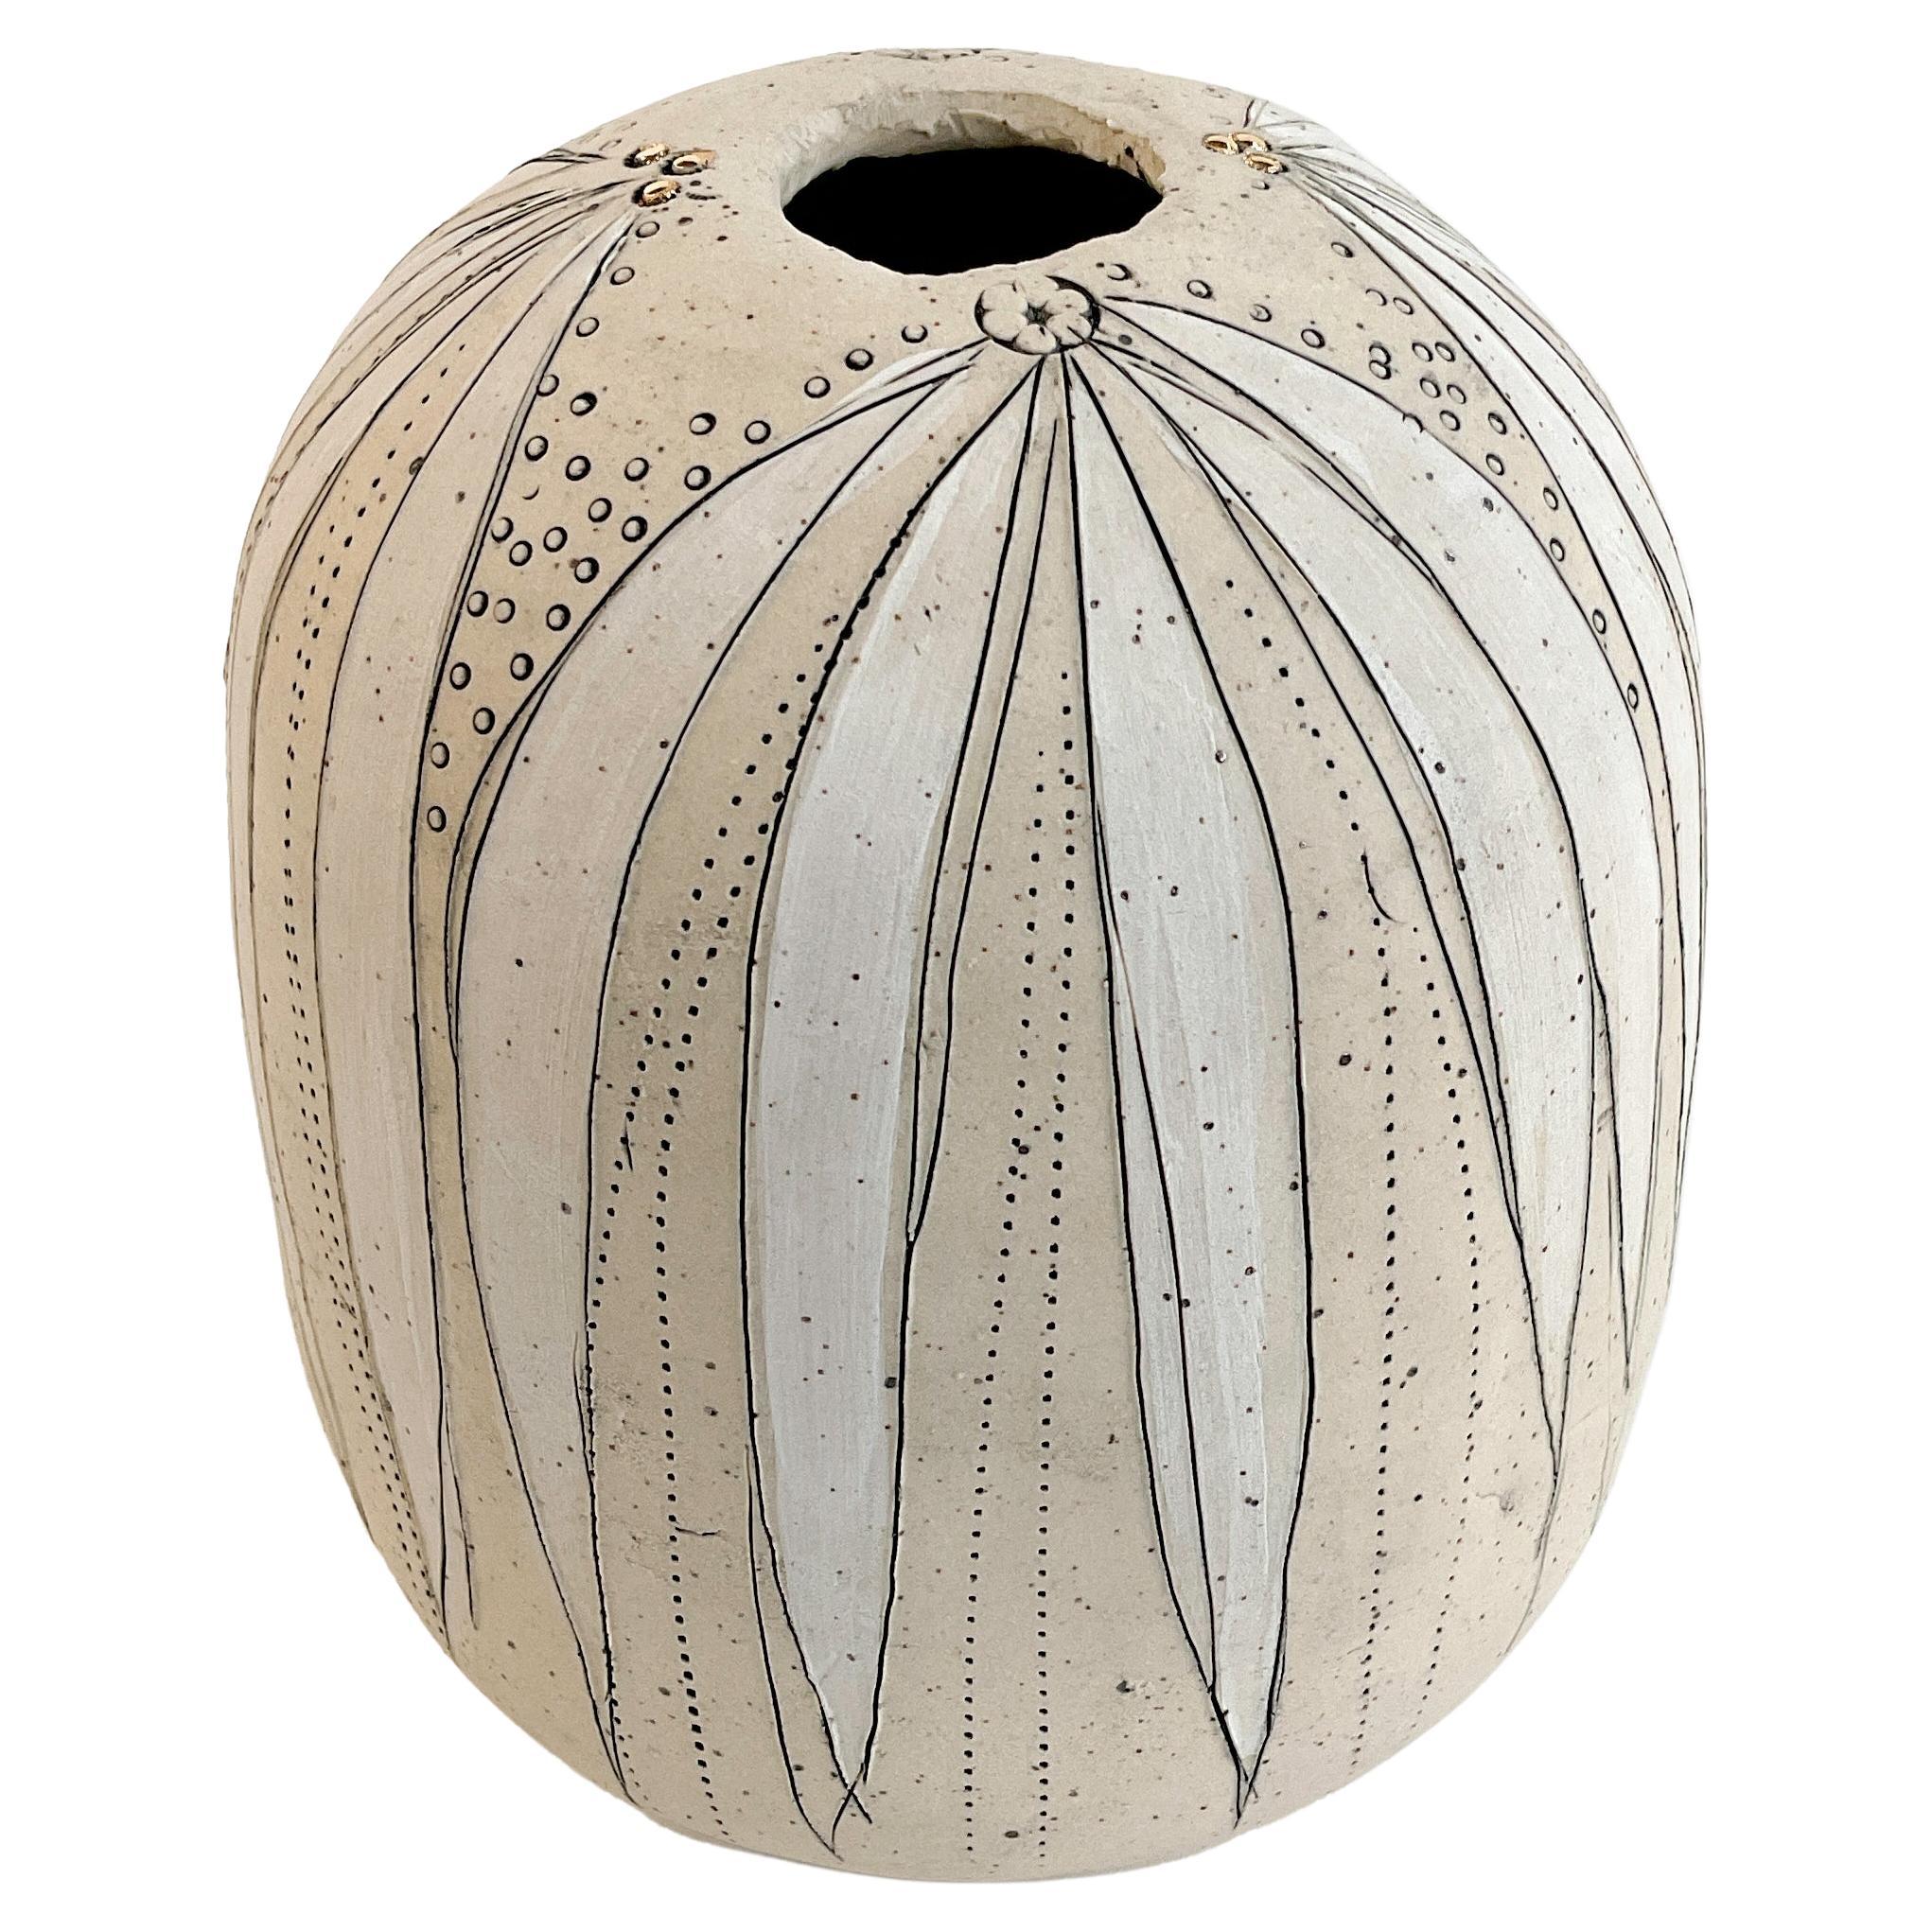  475-G Handgefertigte Budding-Vase aus Steingut mit Golddetails von Helen Prior